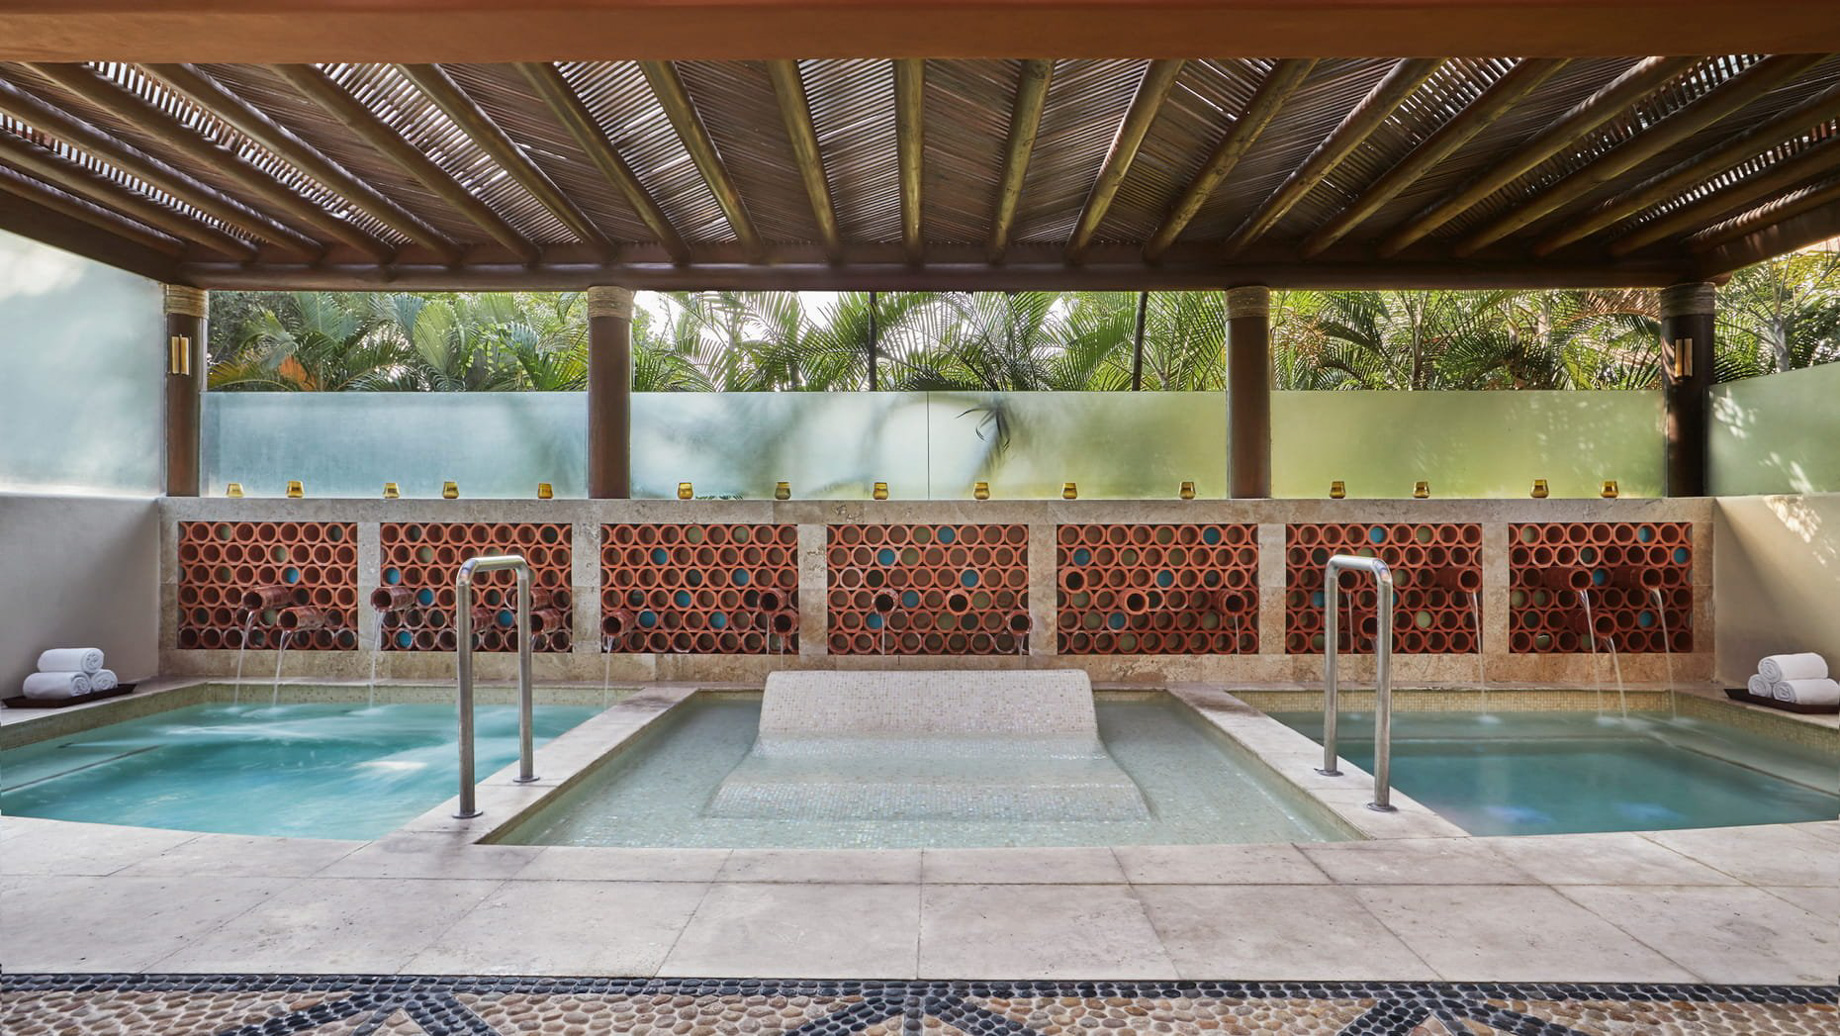 Four Seasons Resort Punta Mita – Nayarit, Mexico – Resort Spa Pool